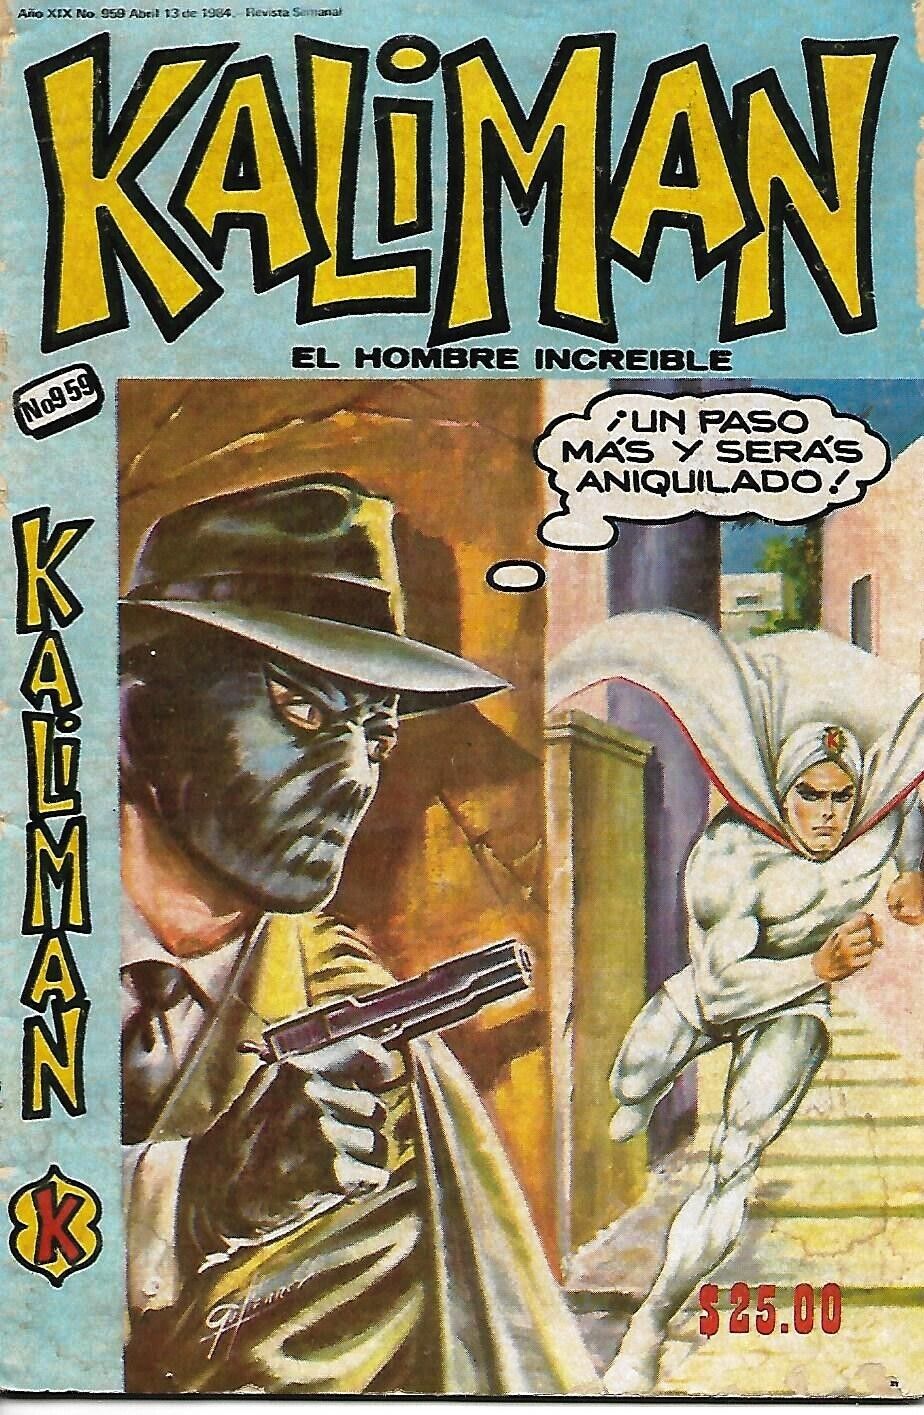 Kaliman El Hombre Increible #959 -Abril 13, 1984 - Mexico